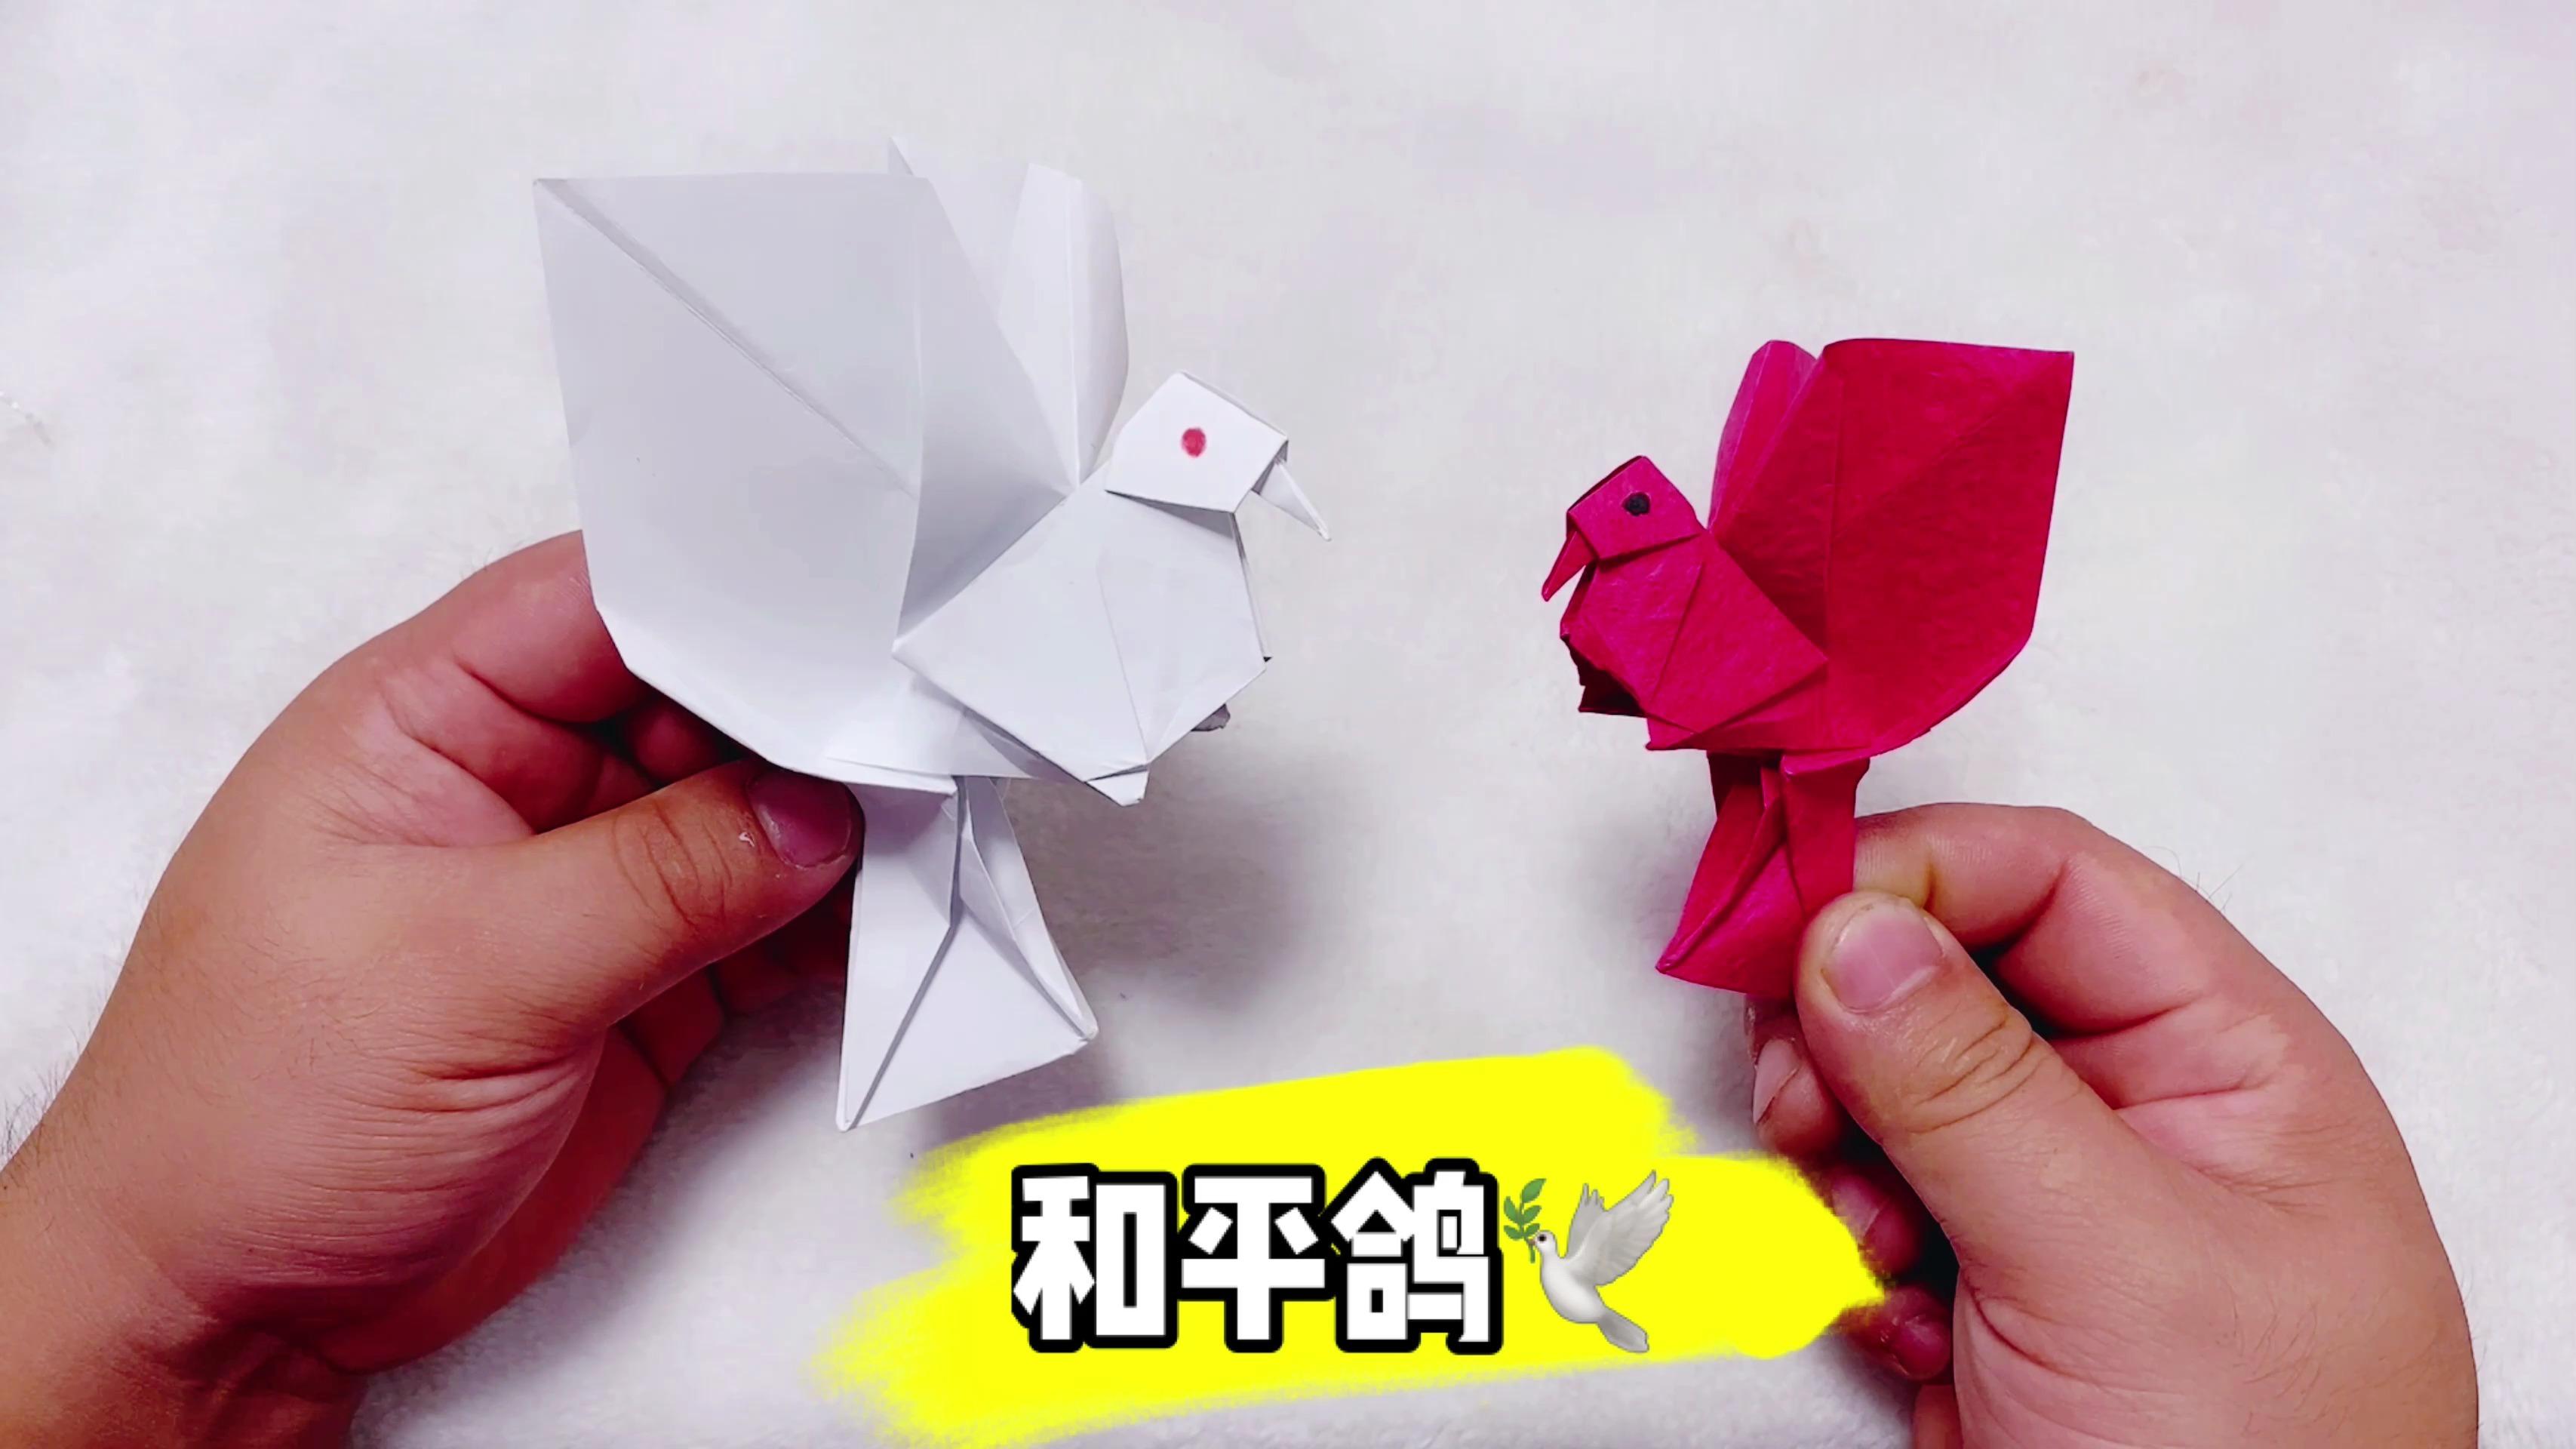 手工折纸:可爱的小绣球花折纸,超简单